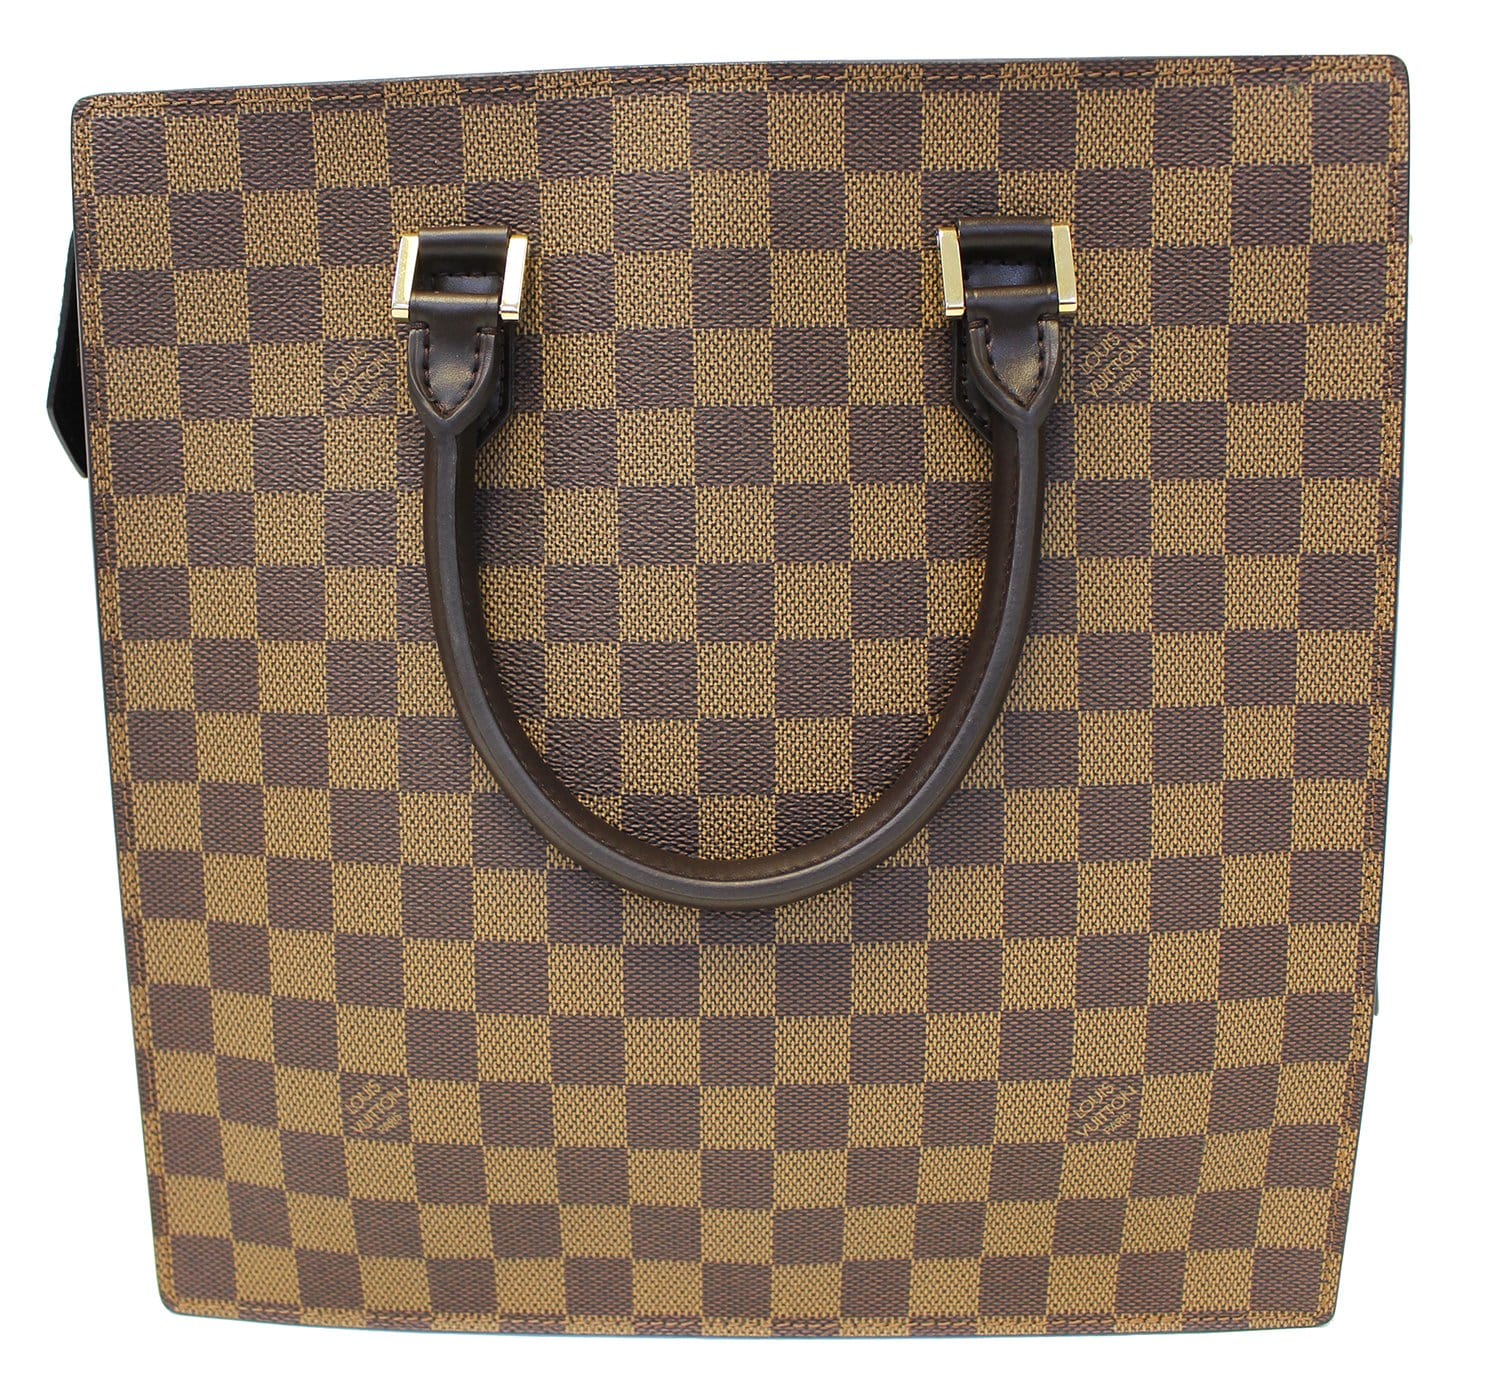 Authentic LOUIS VUITTON Damier Ebene Venice Sac Plat Handbag E3526